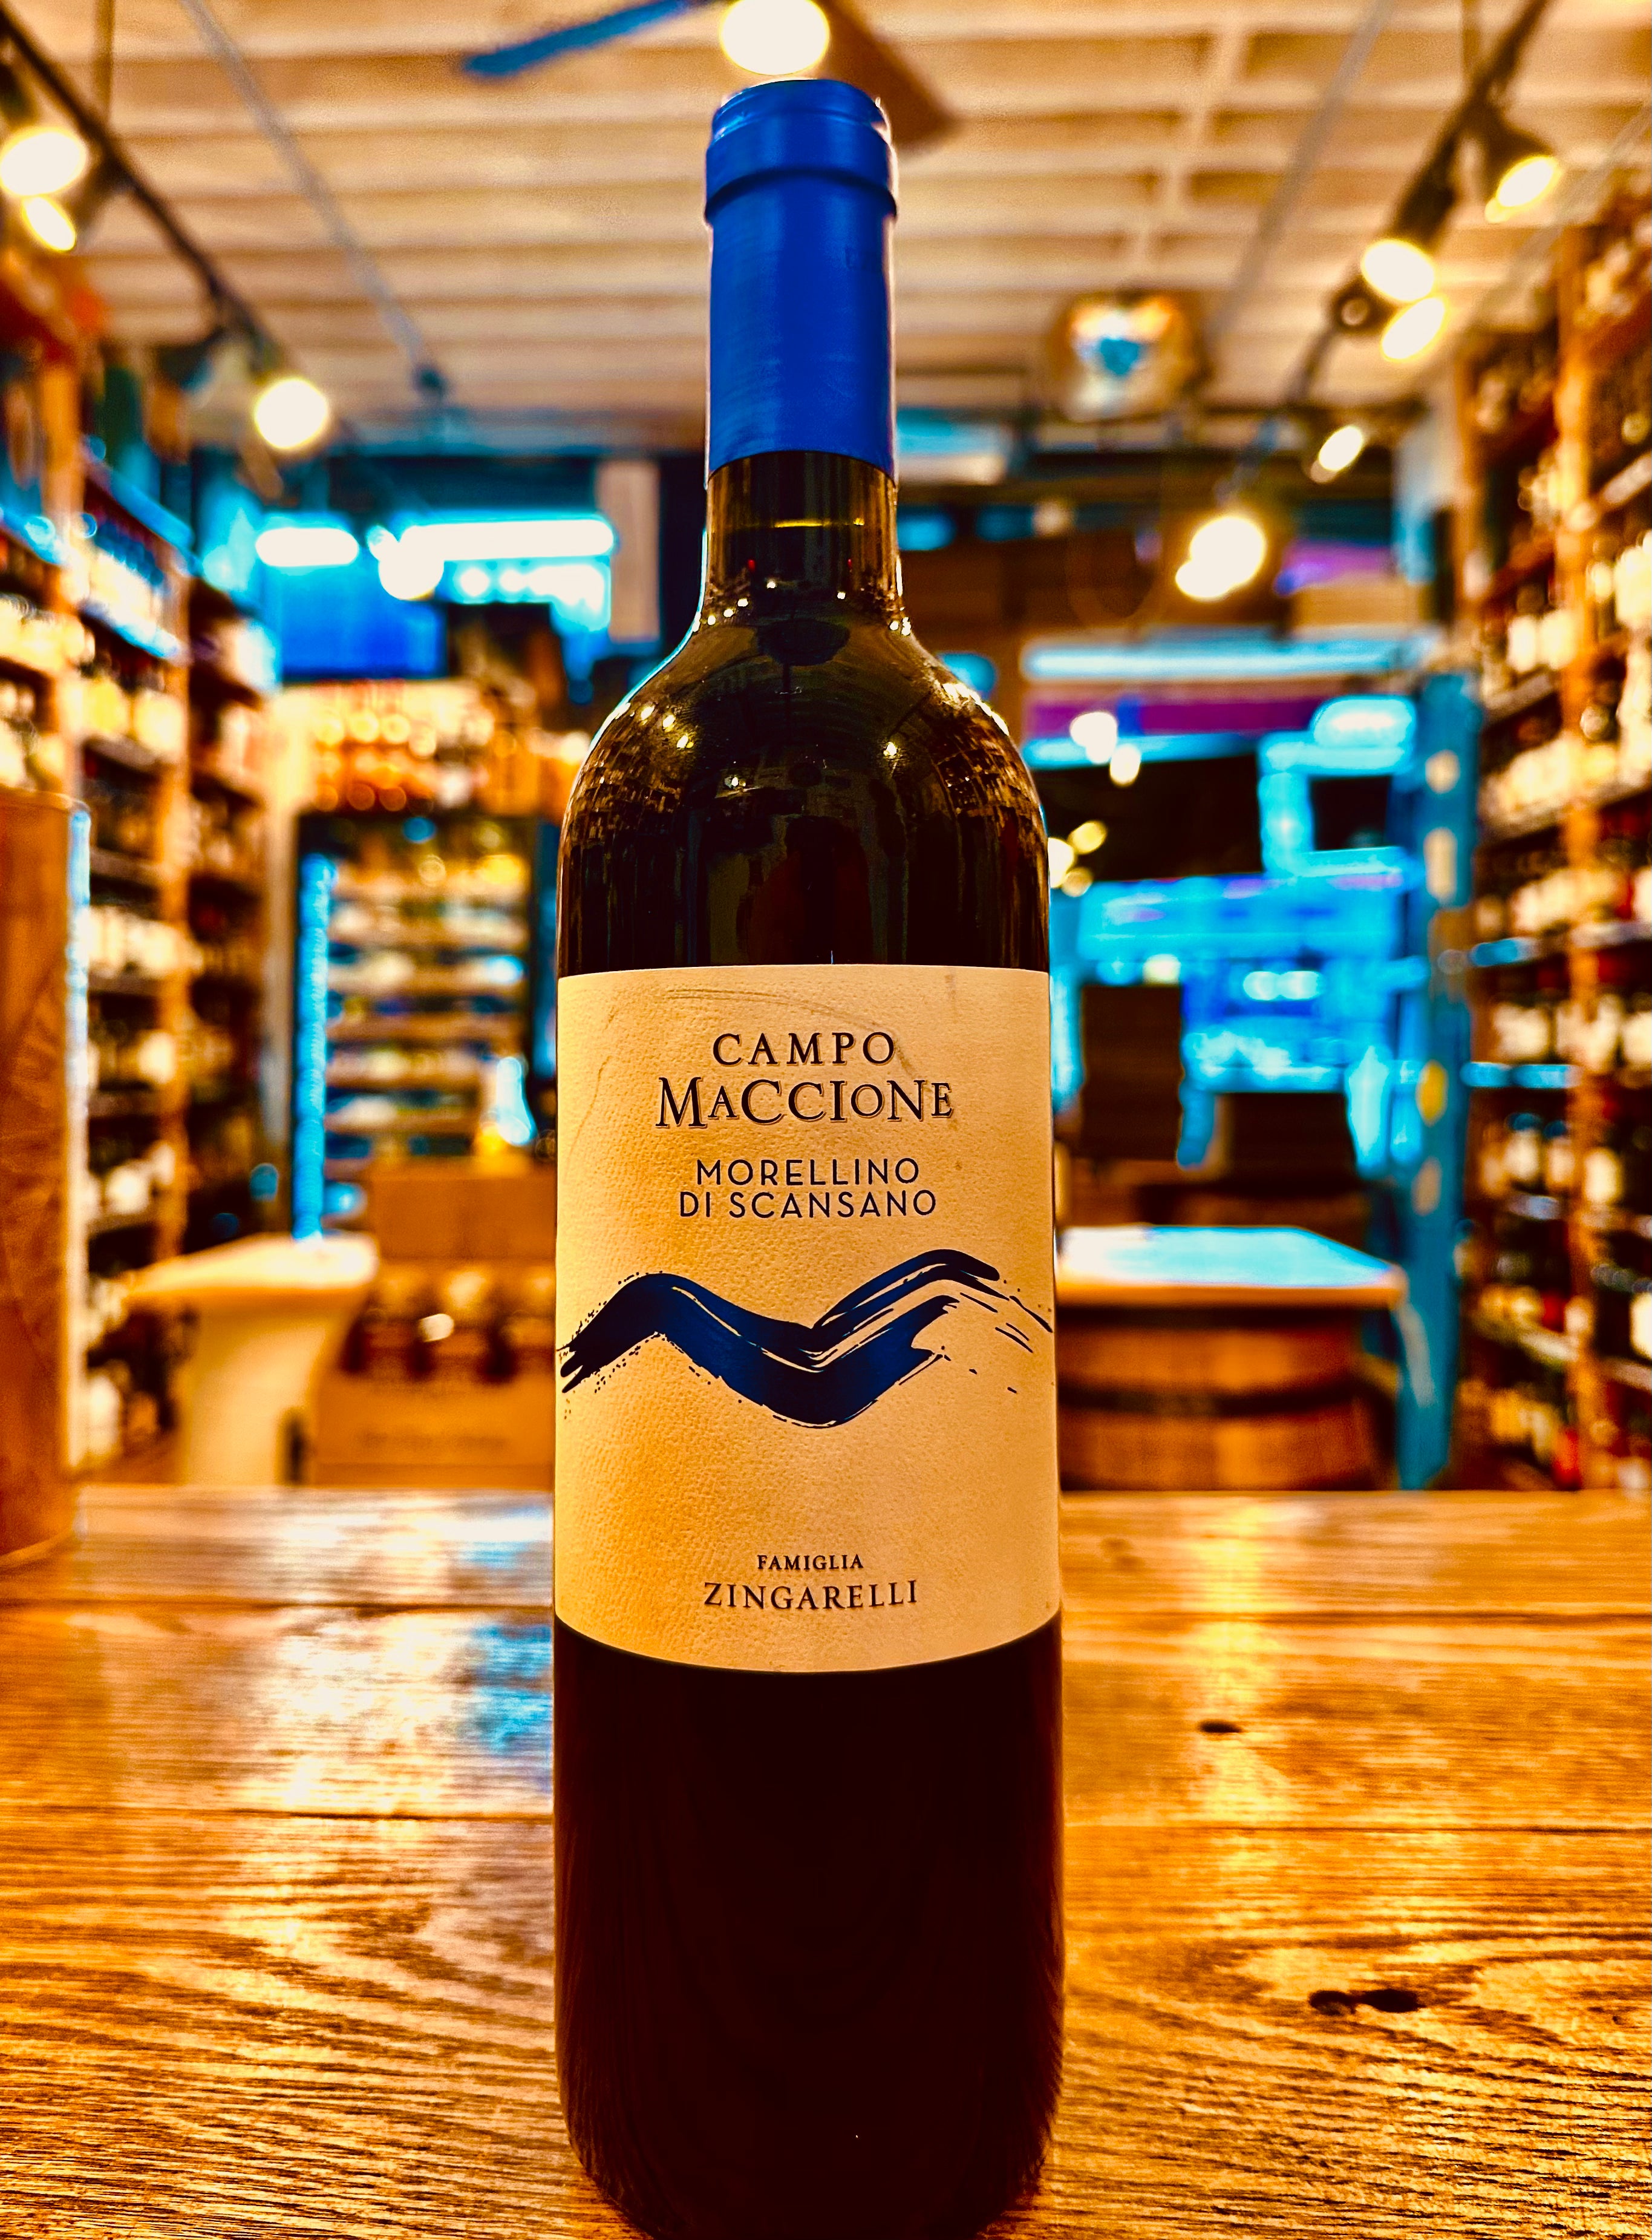 Campo Maccione Morellino di Scansano 750ml a dark wine bottle with a white label and a bright blue top